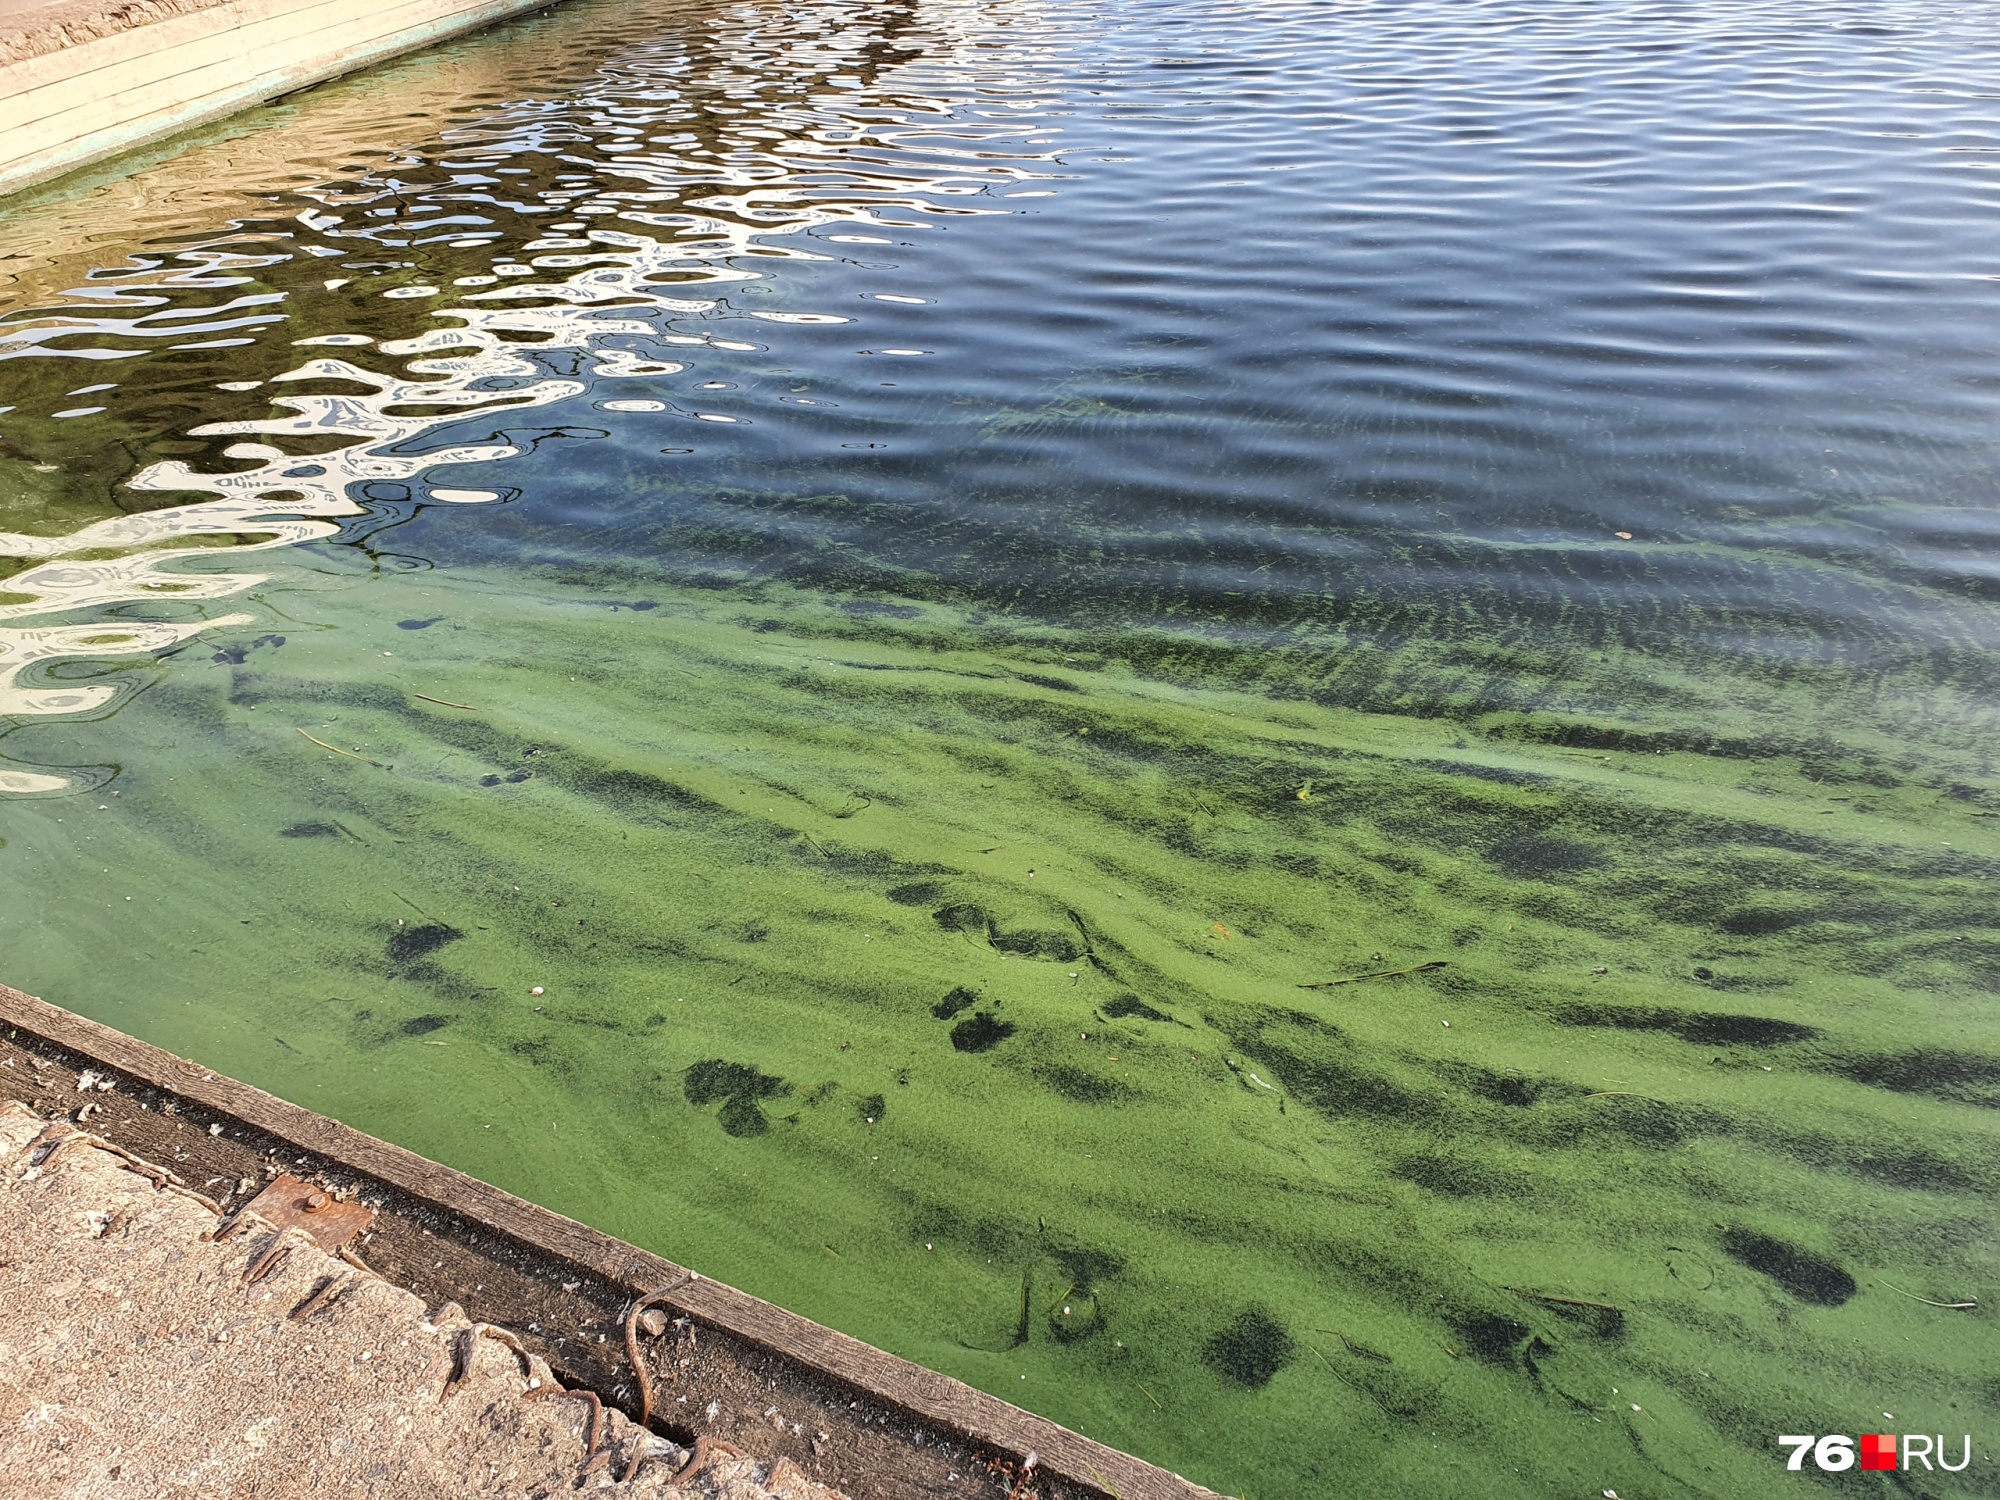  В Ярославле вода в Волге окрасилась в зелёный цвет